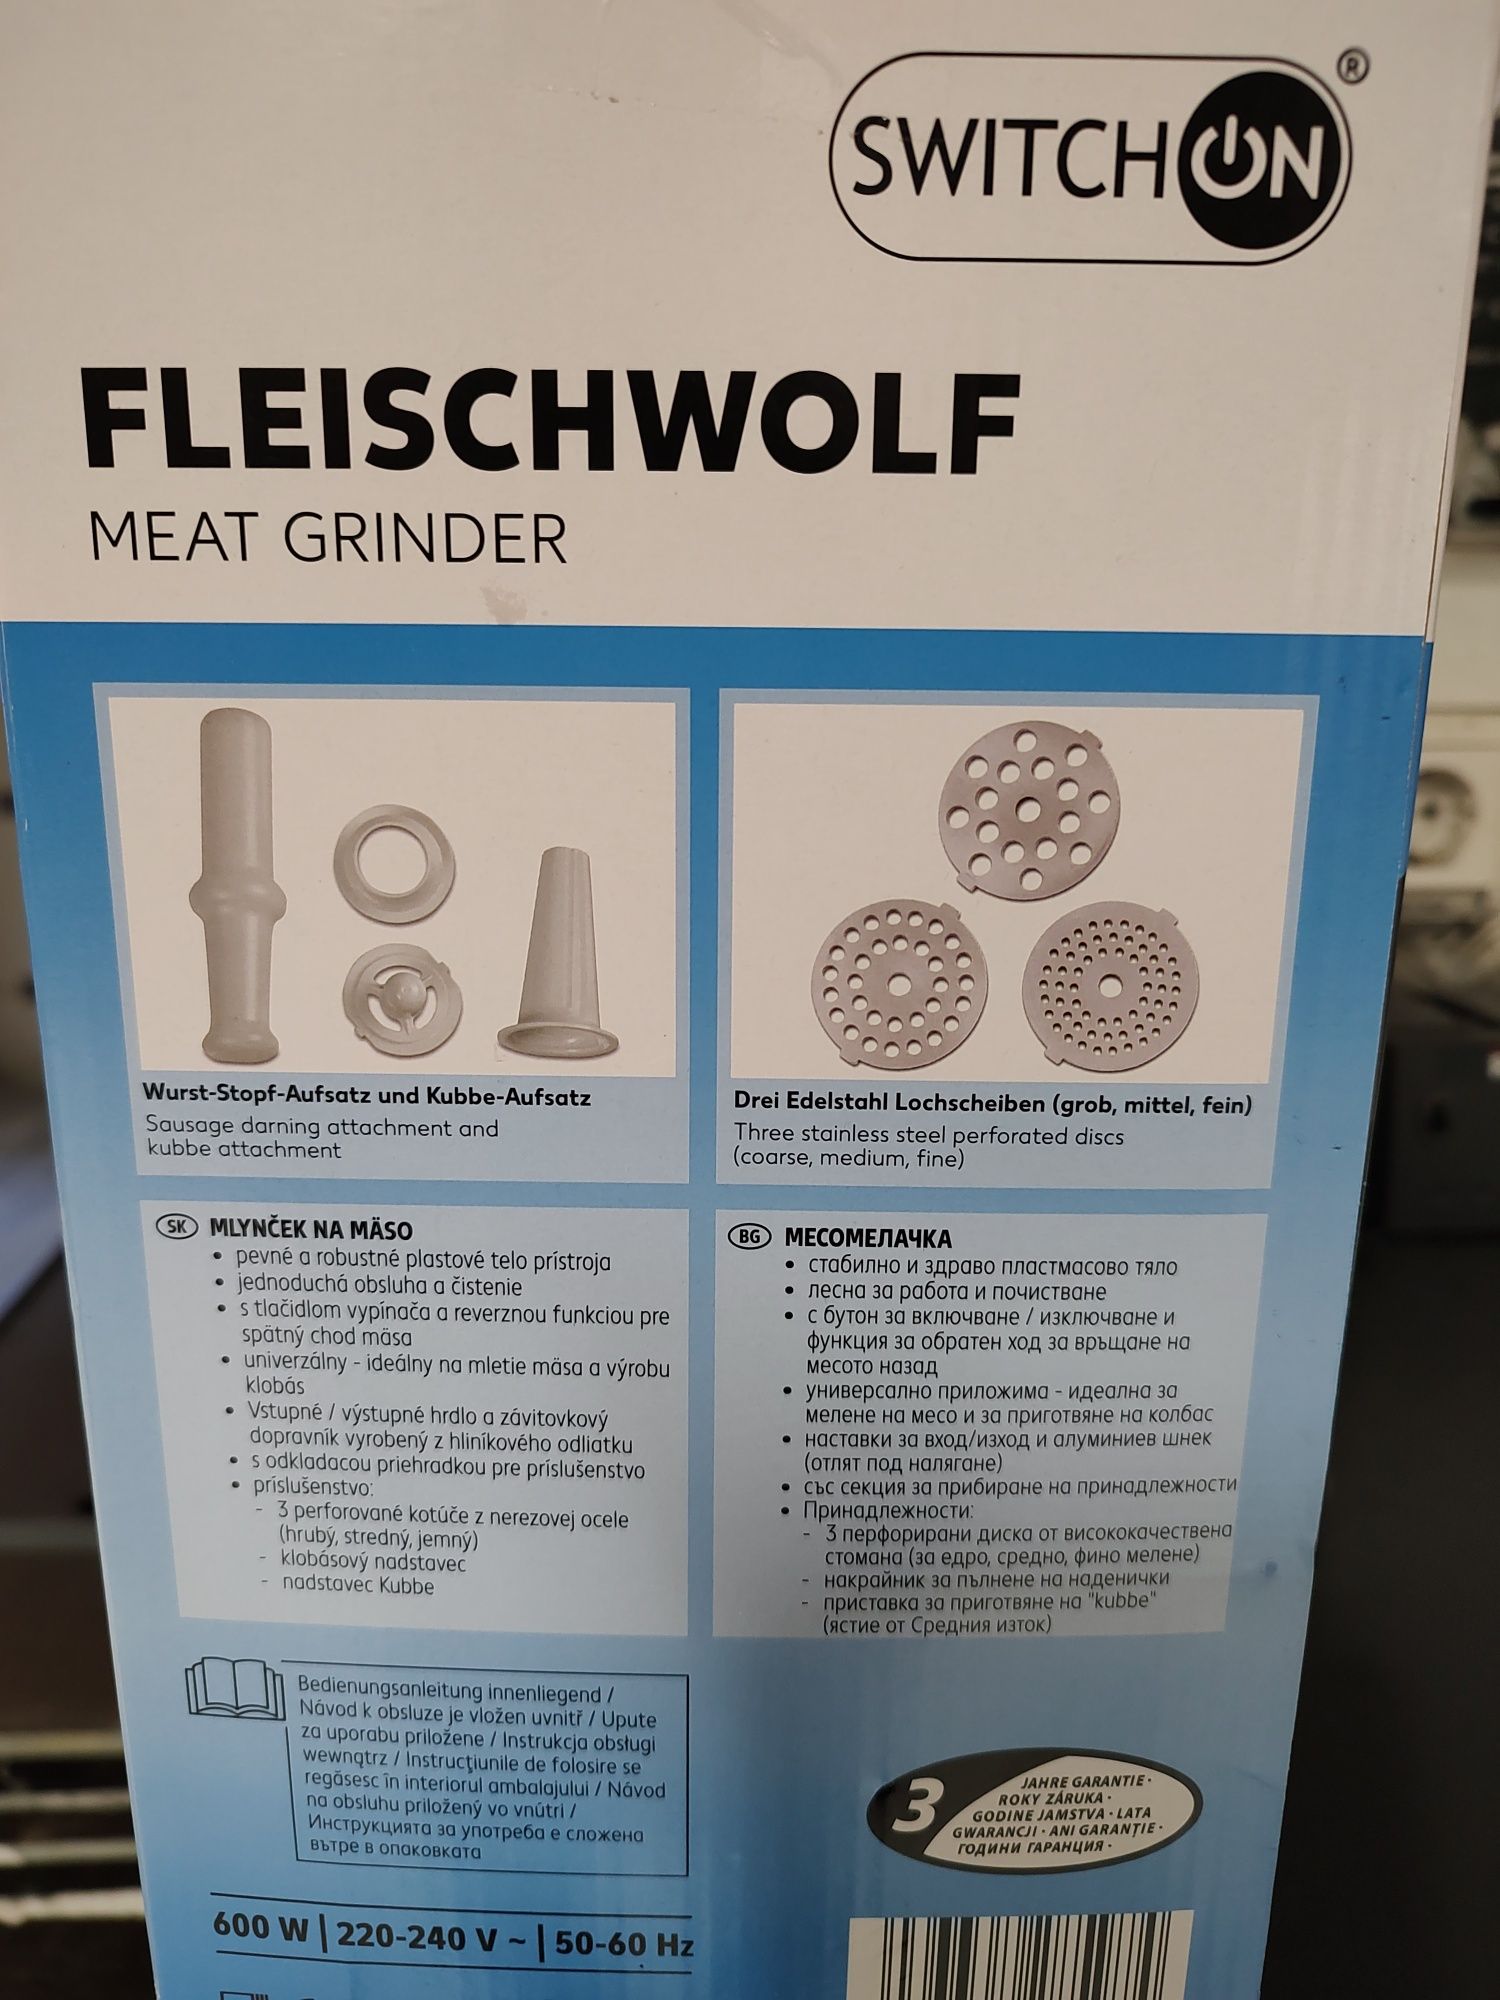 Accesorii Fleischwolf 600w kaufland